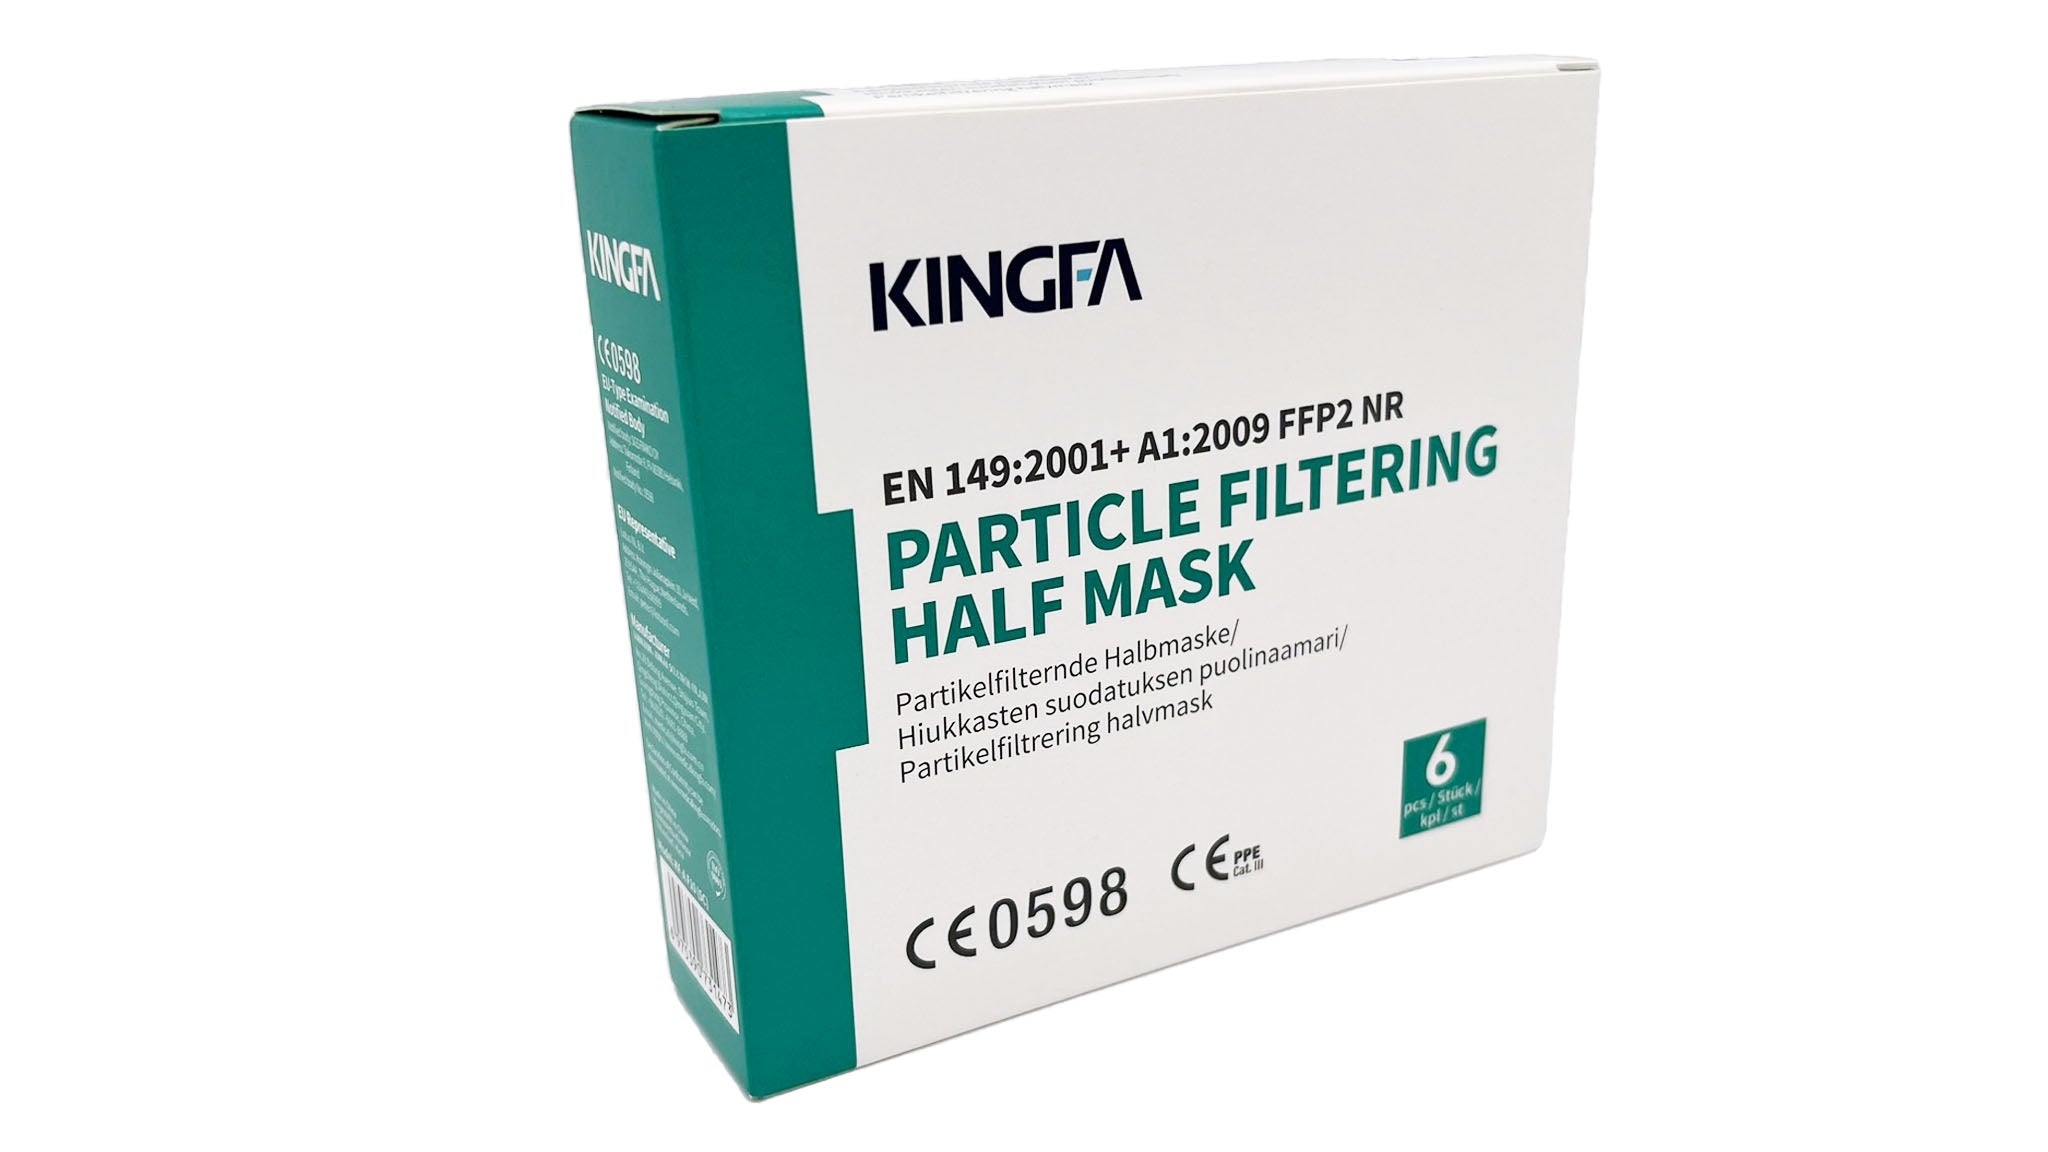 Kingfa FFP2 Masken einzeln eingeschweißt (6 Masken je Box) - weiß